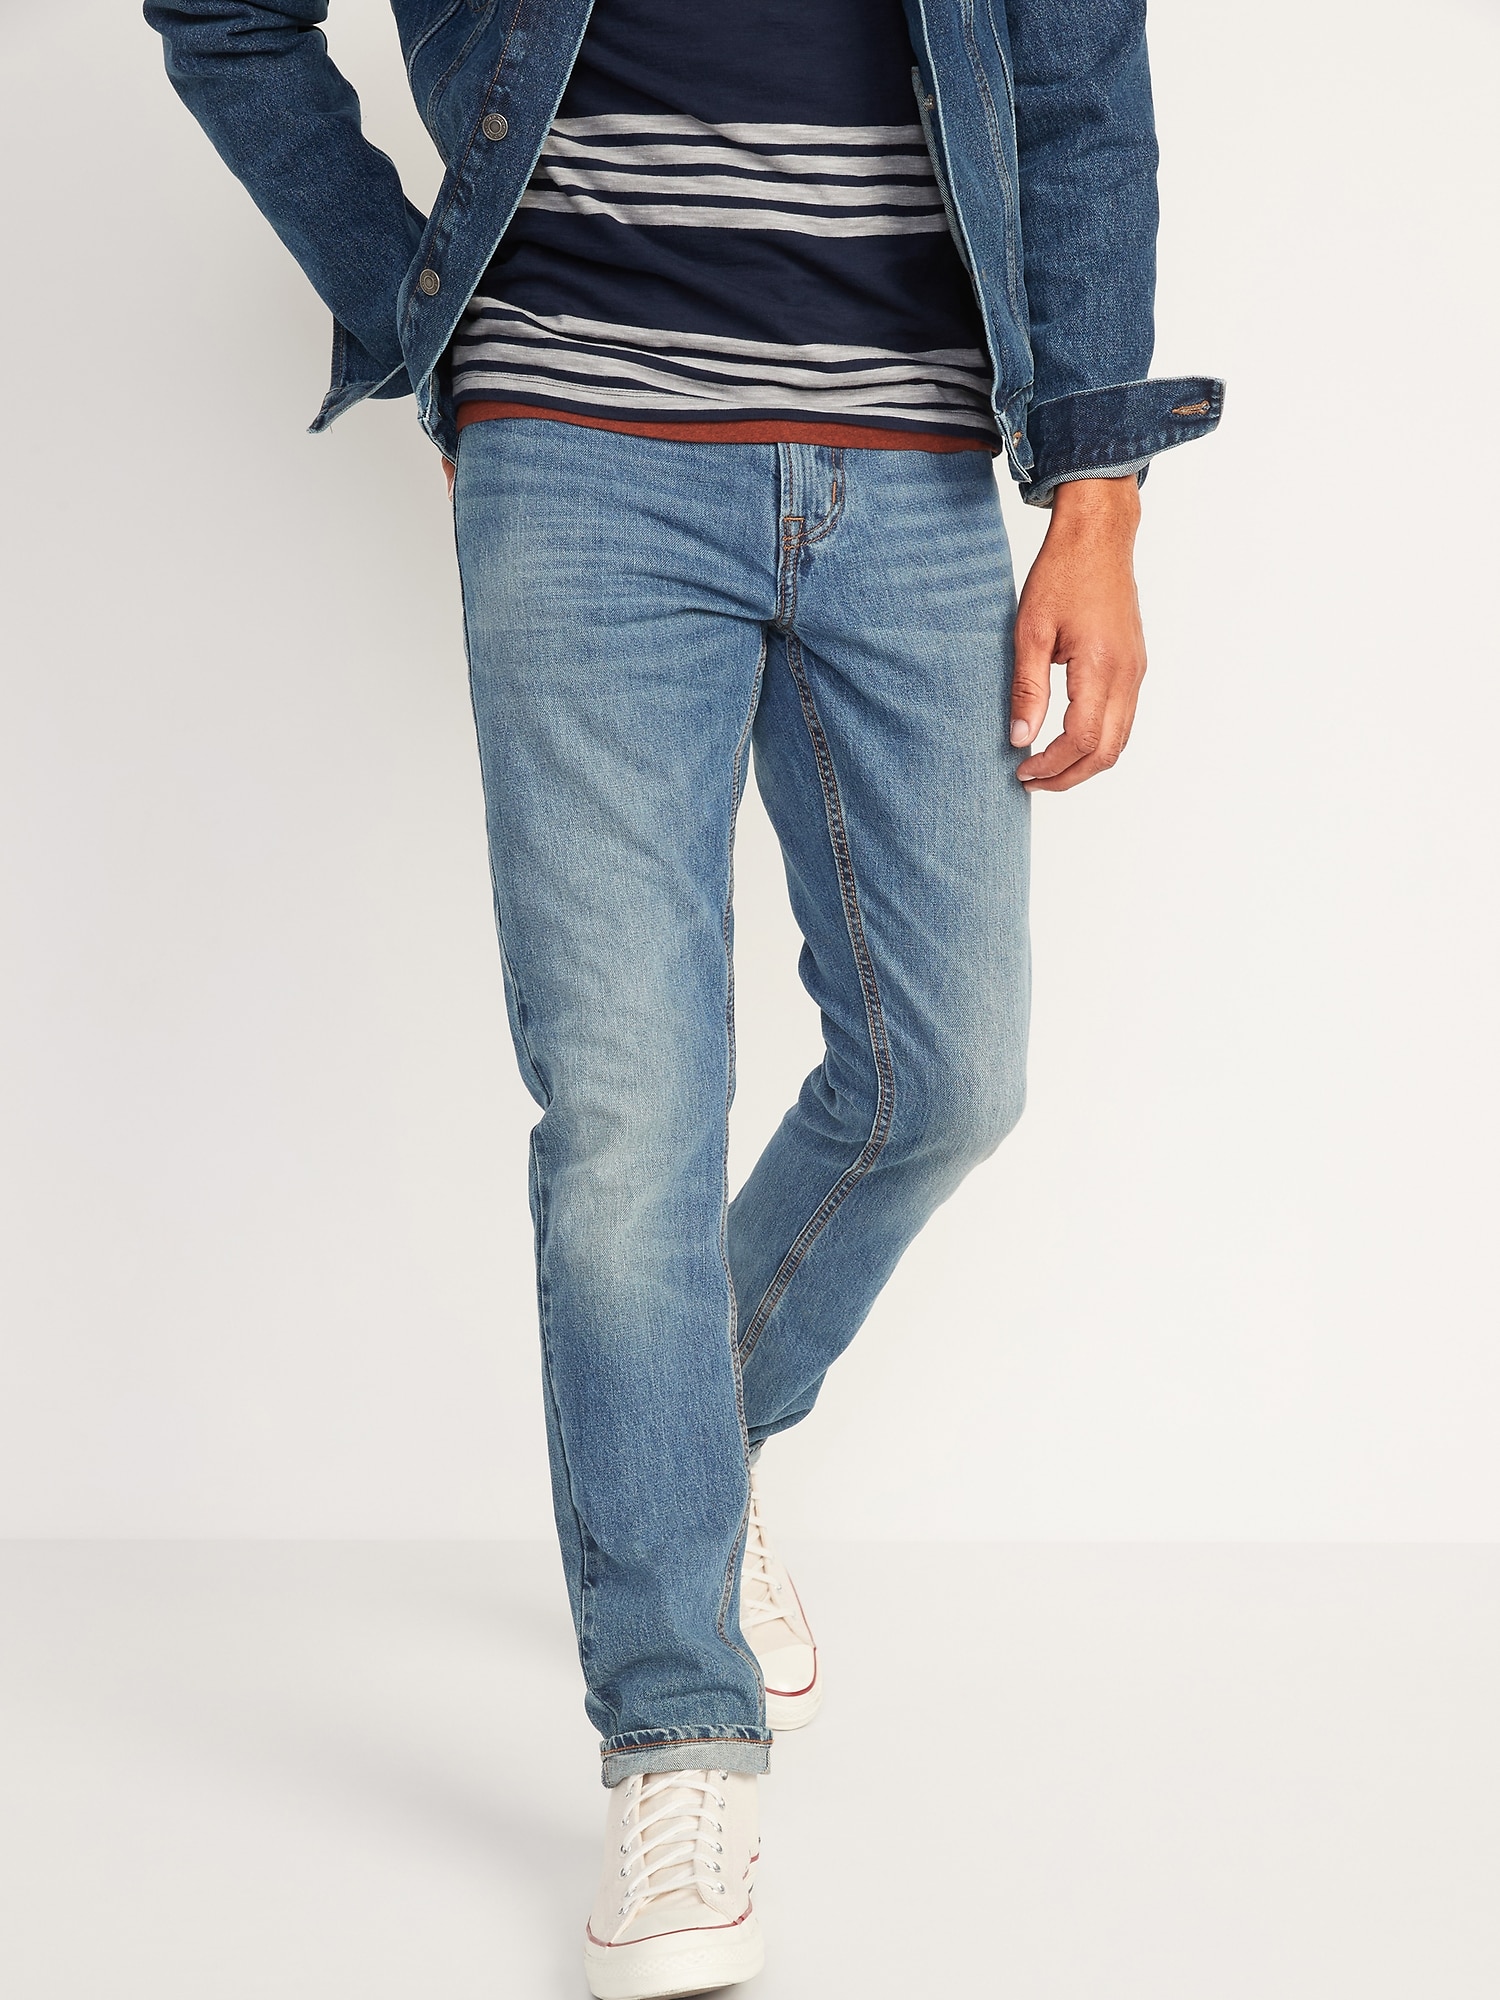 Slim Rigid Non-Stretch Medium-Wash Jeans for Men